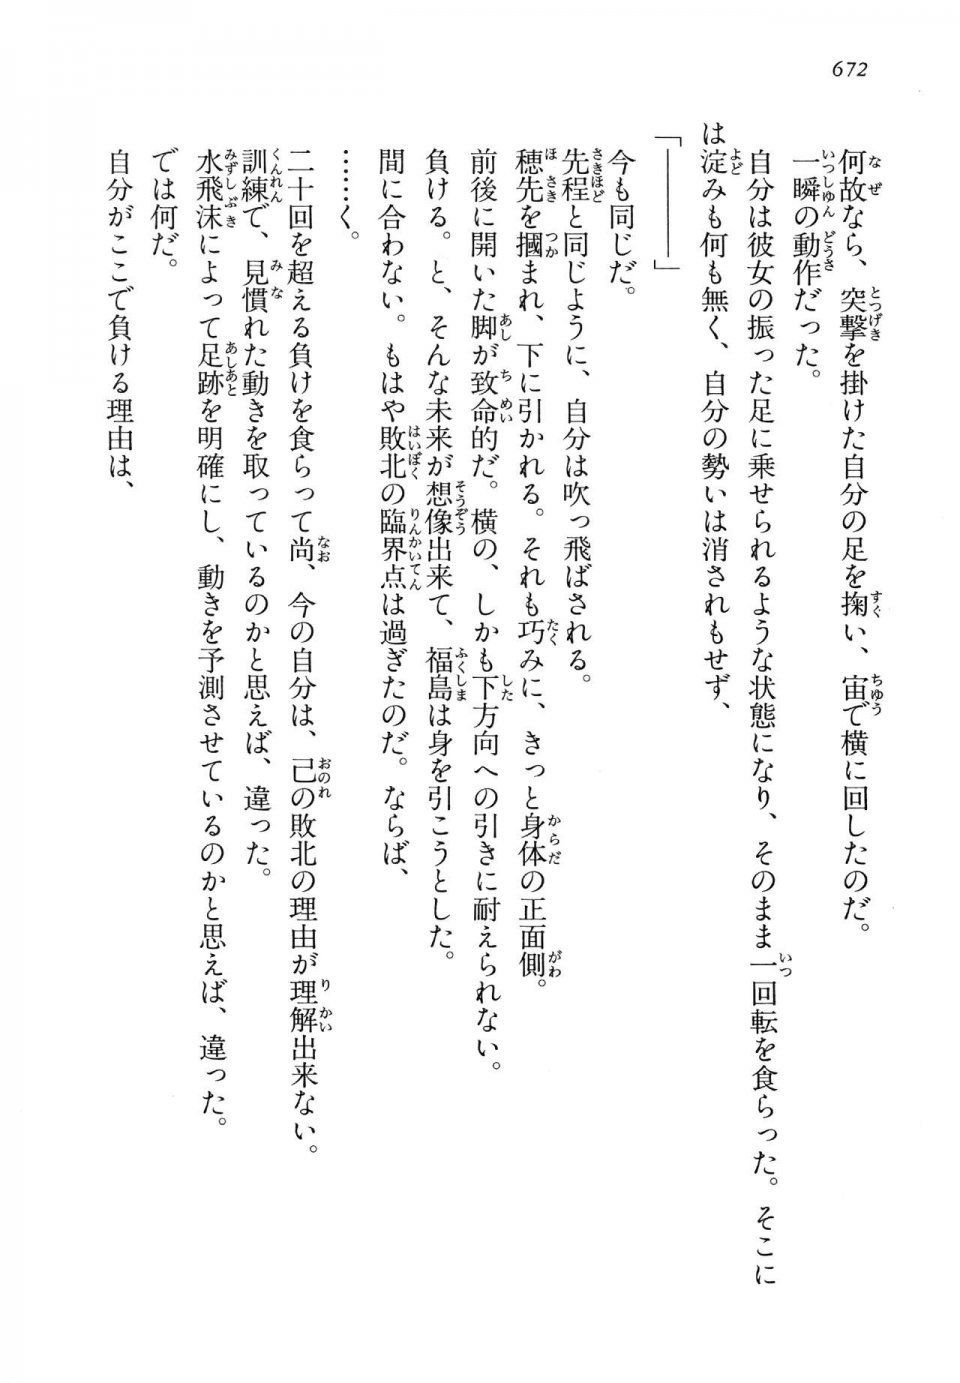 Kyoukai Senjou no Horizon LN Vol 14(6B) - Photo #672